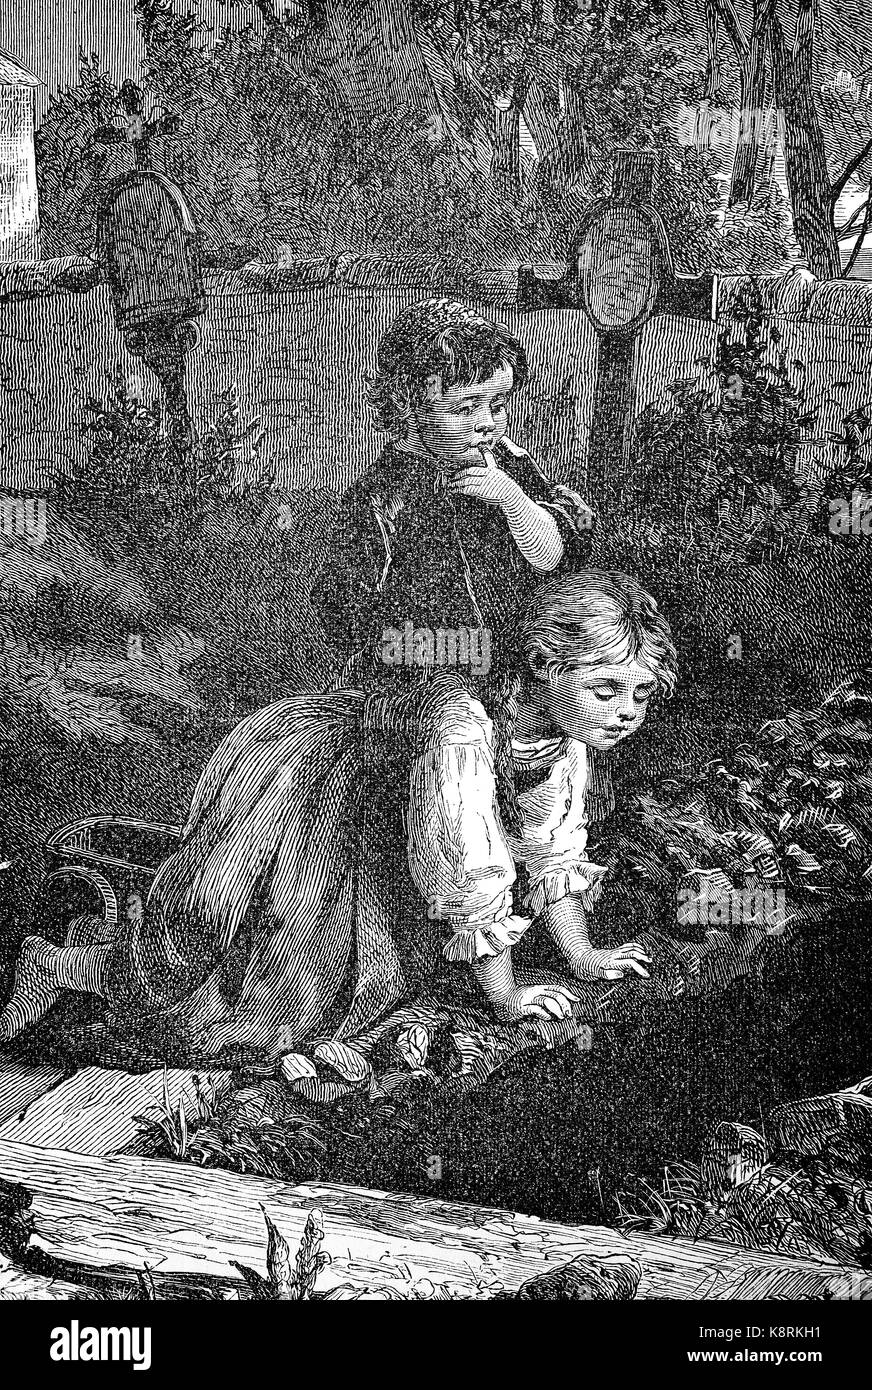 Zwei Kinder schauen in einen Frisch zerrissenen Grab, zwei Kinder Schulmeisterschaft in ein frisch ausgehobenes Grab, digital verbesserte Reproduktion eines Holzschnitt, im 19. Jahrhundert veröffentlicht. Stockfoto